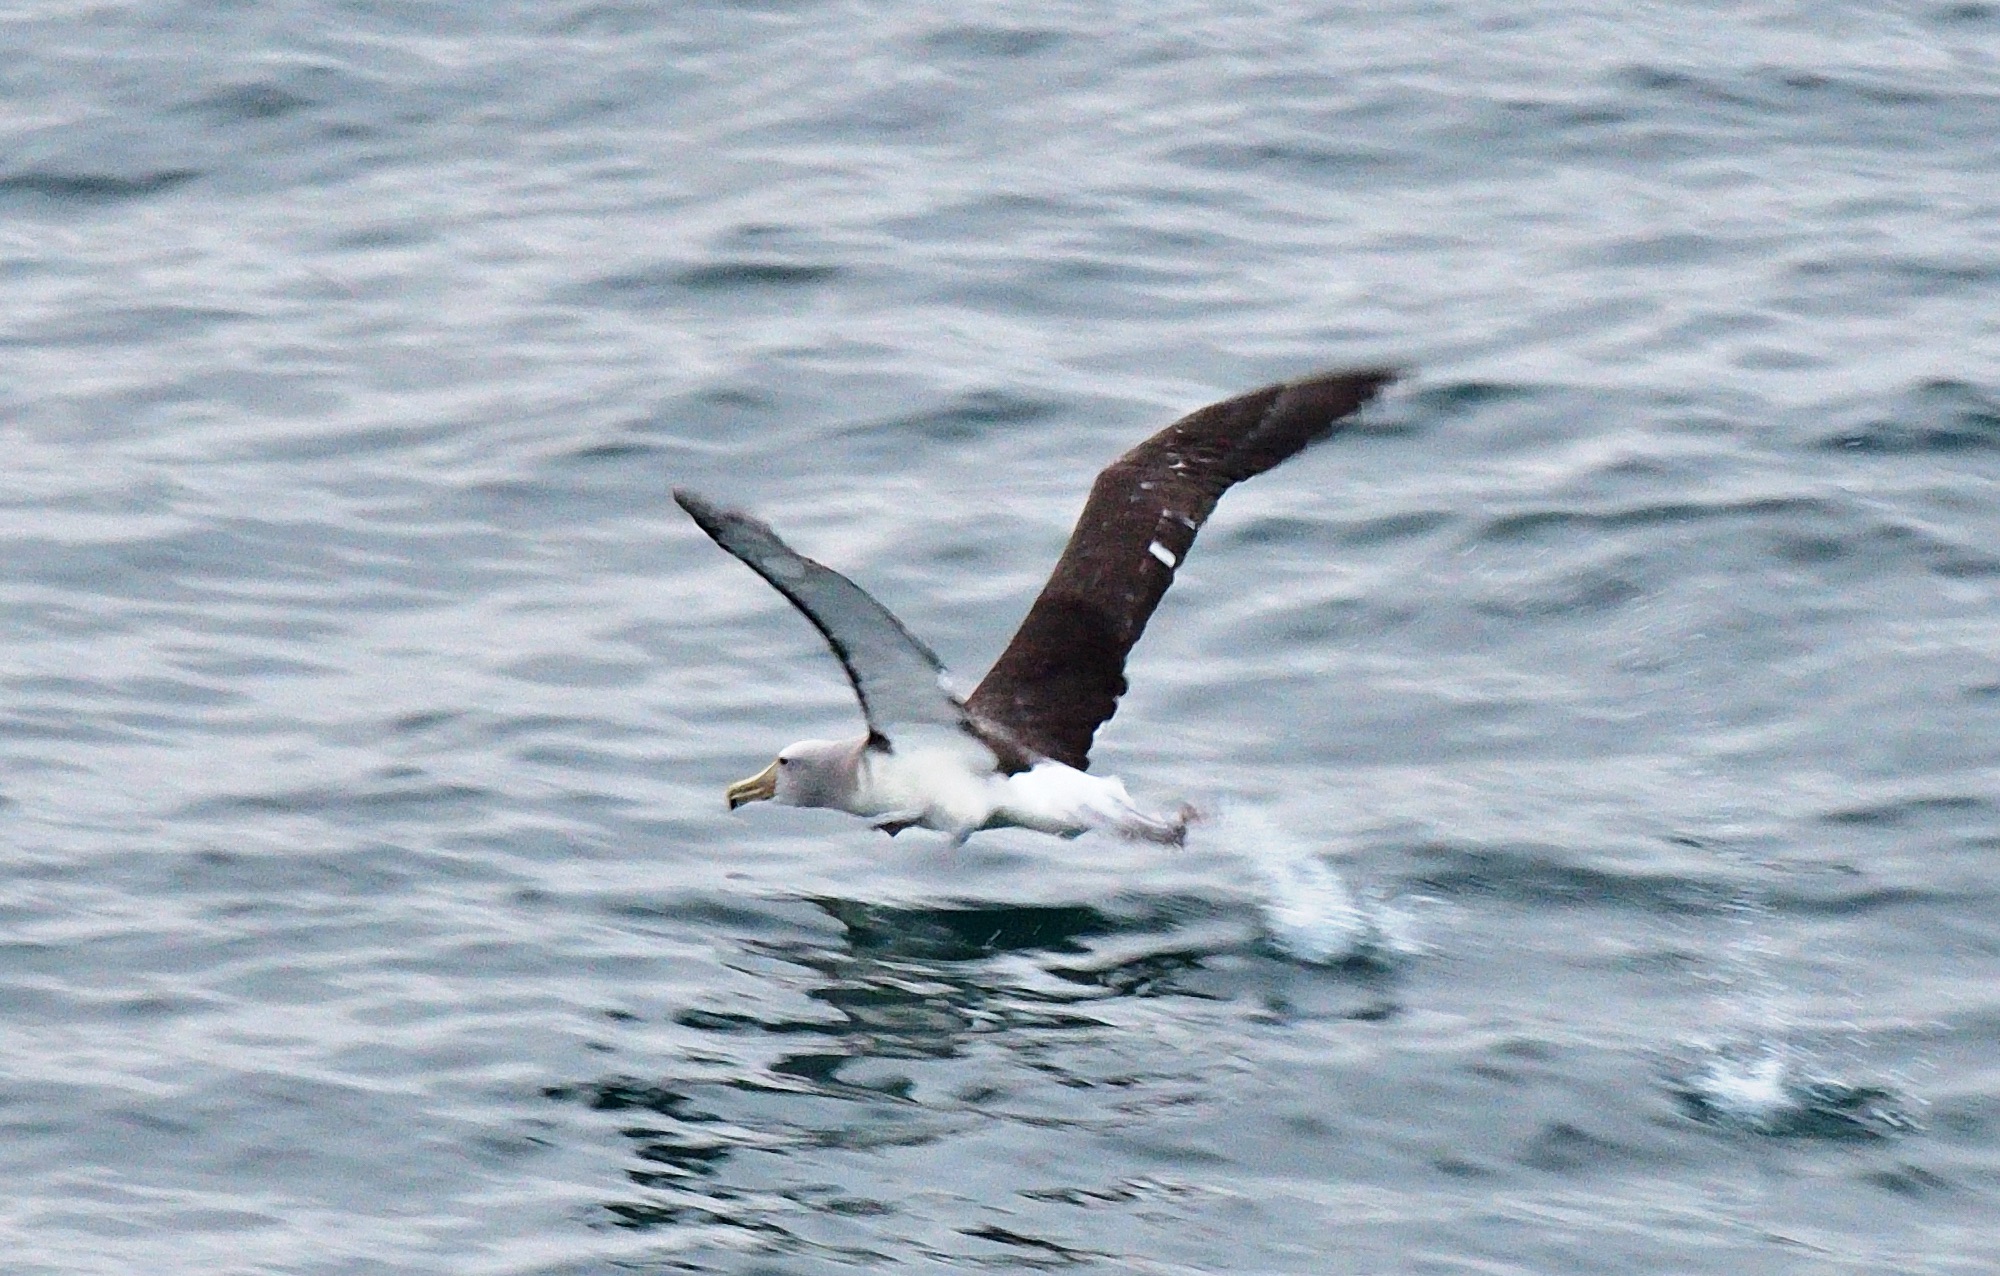 salvin's albatross